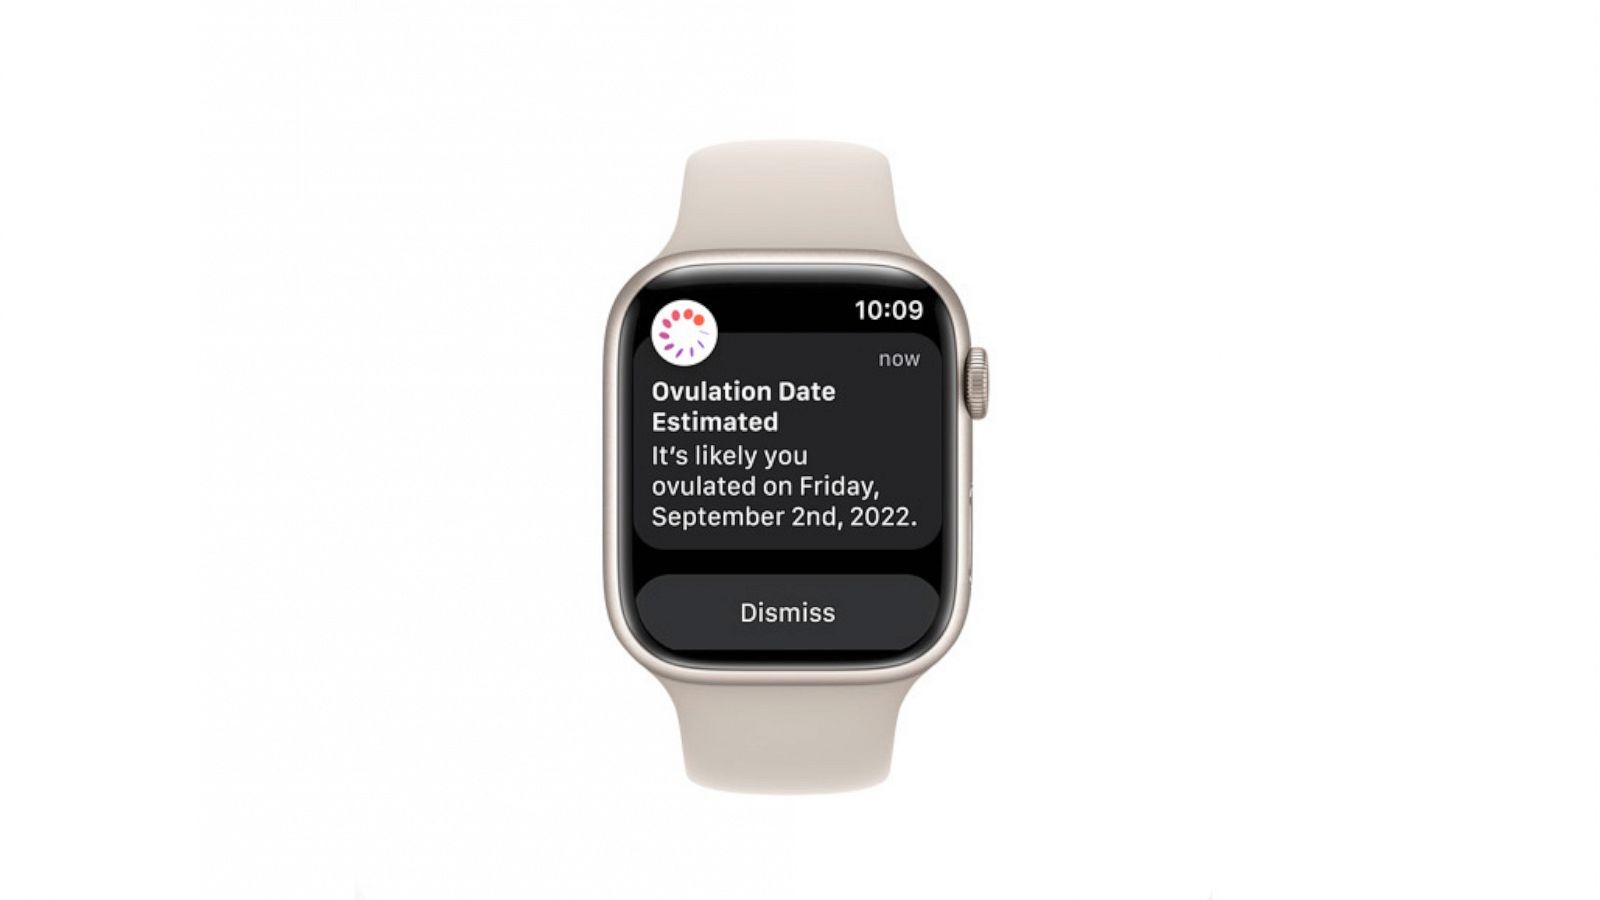 O app Apple Watch - Suporte da Apple (BR)